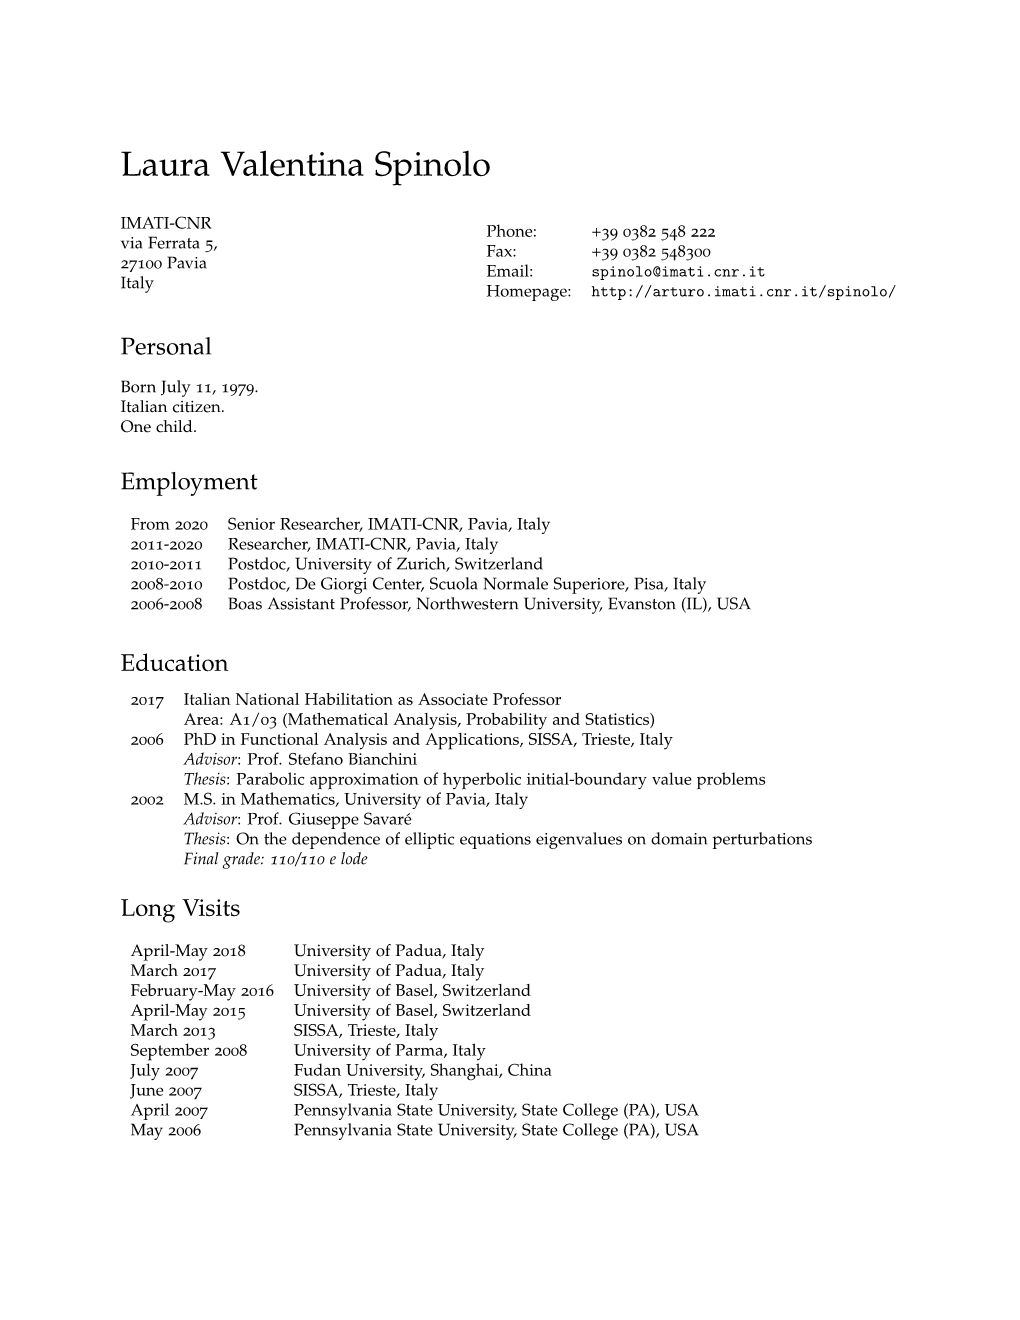 Laura Valentina Spinolo: Curriculum Vitae